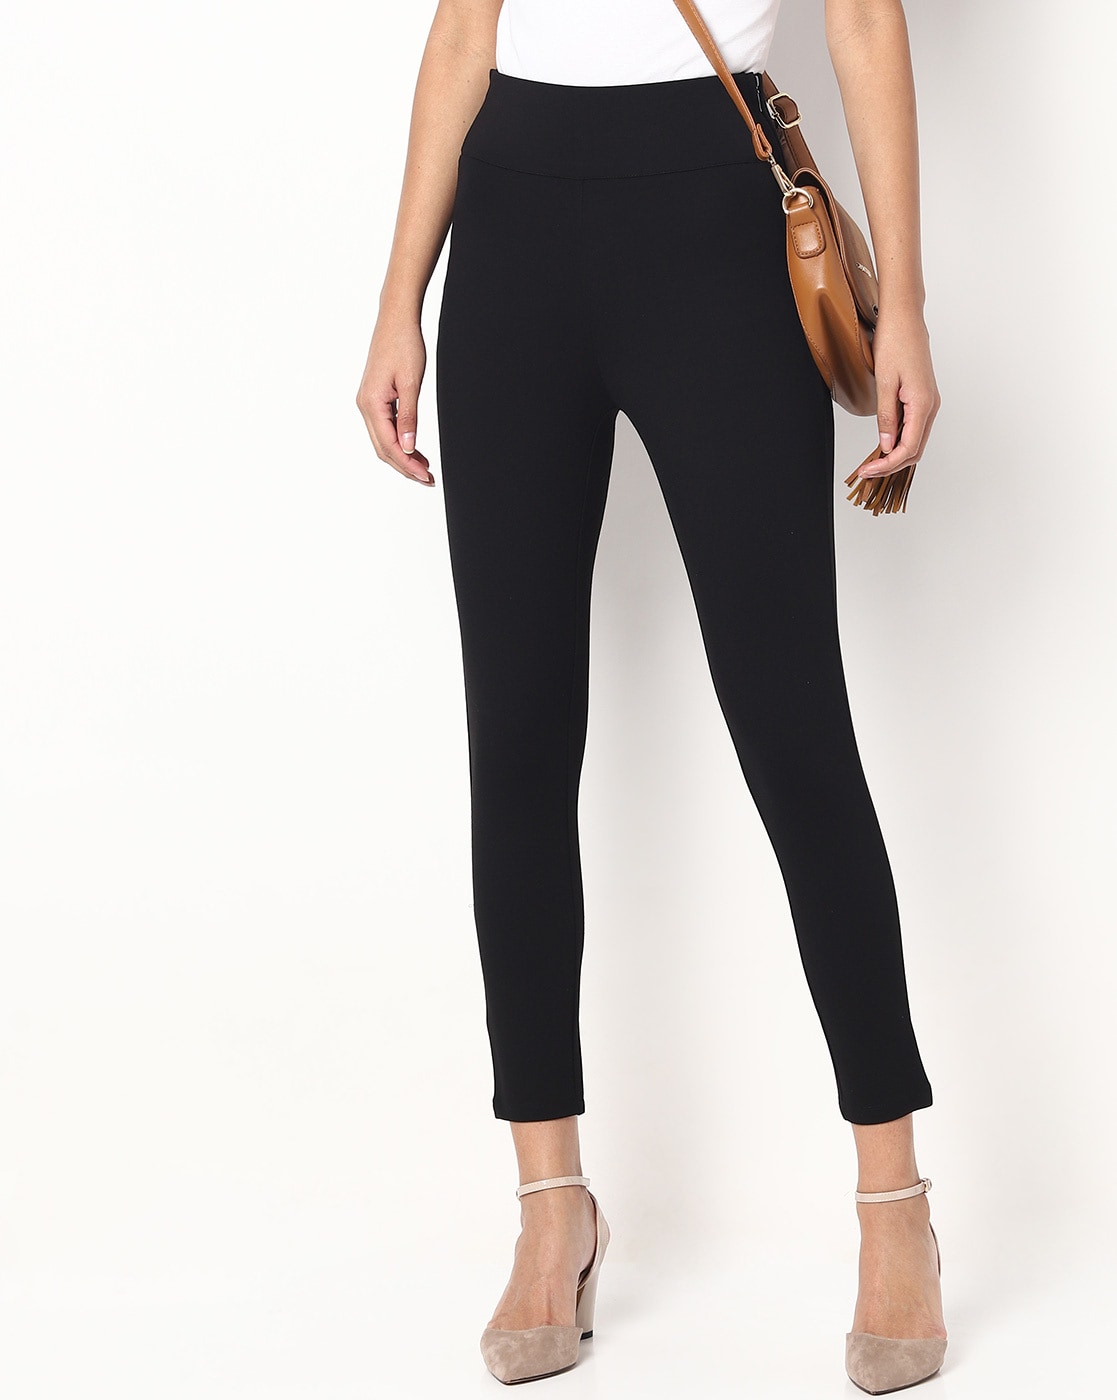 Buy online Black Solid Treggings Trouser from bottom wear for